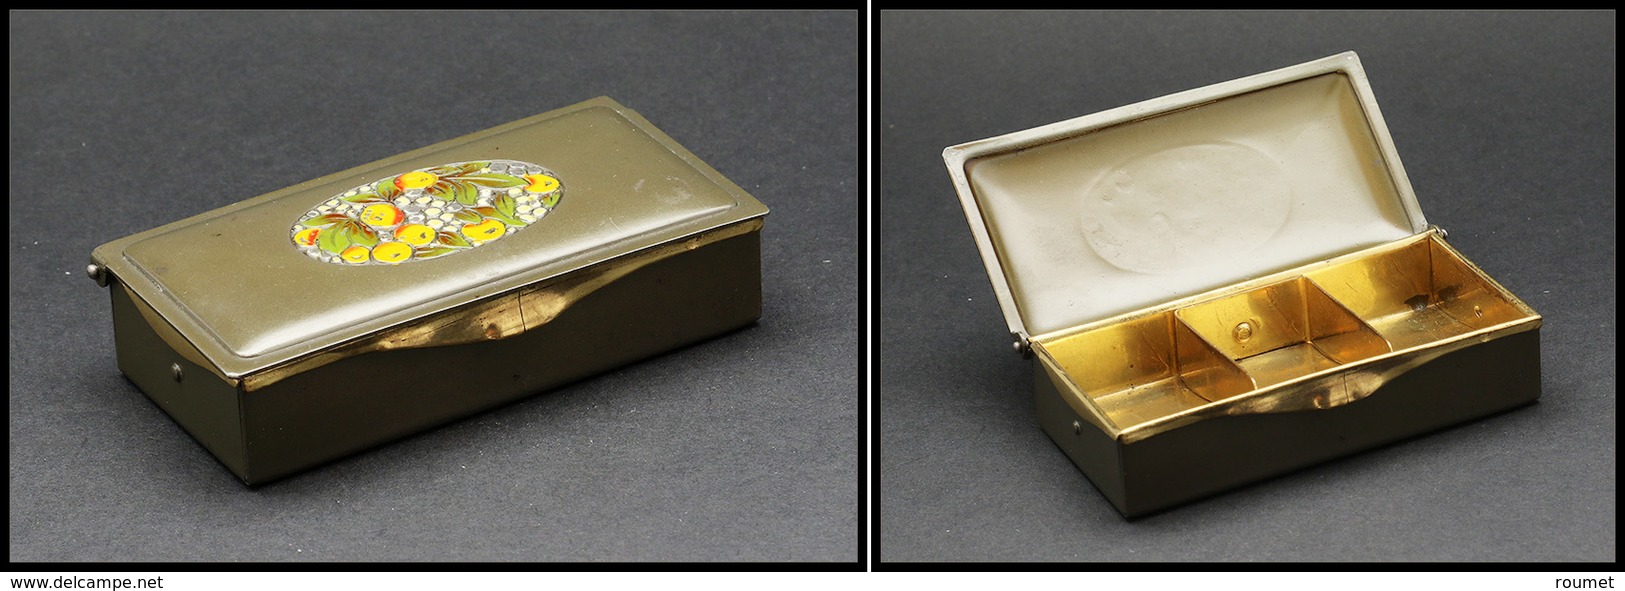 Boîte En Laiton, "fruits En émail" En Décor, Marquée "Gesch.", 3 Comp., 78x38x18mm. - TB - Stamp Boxes